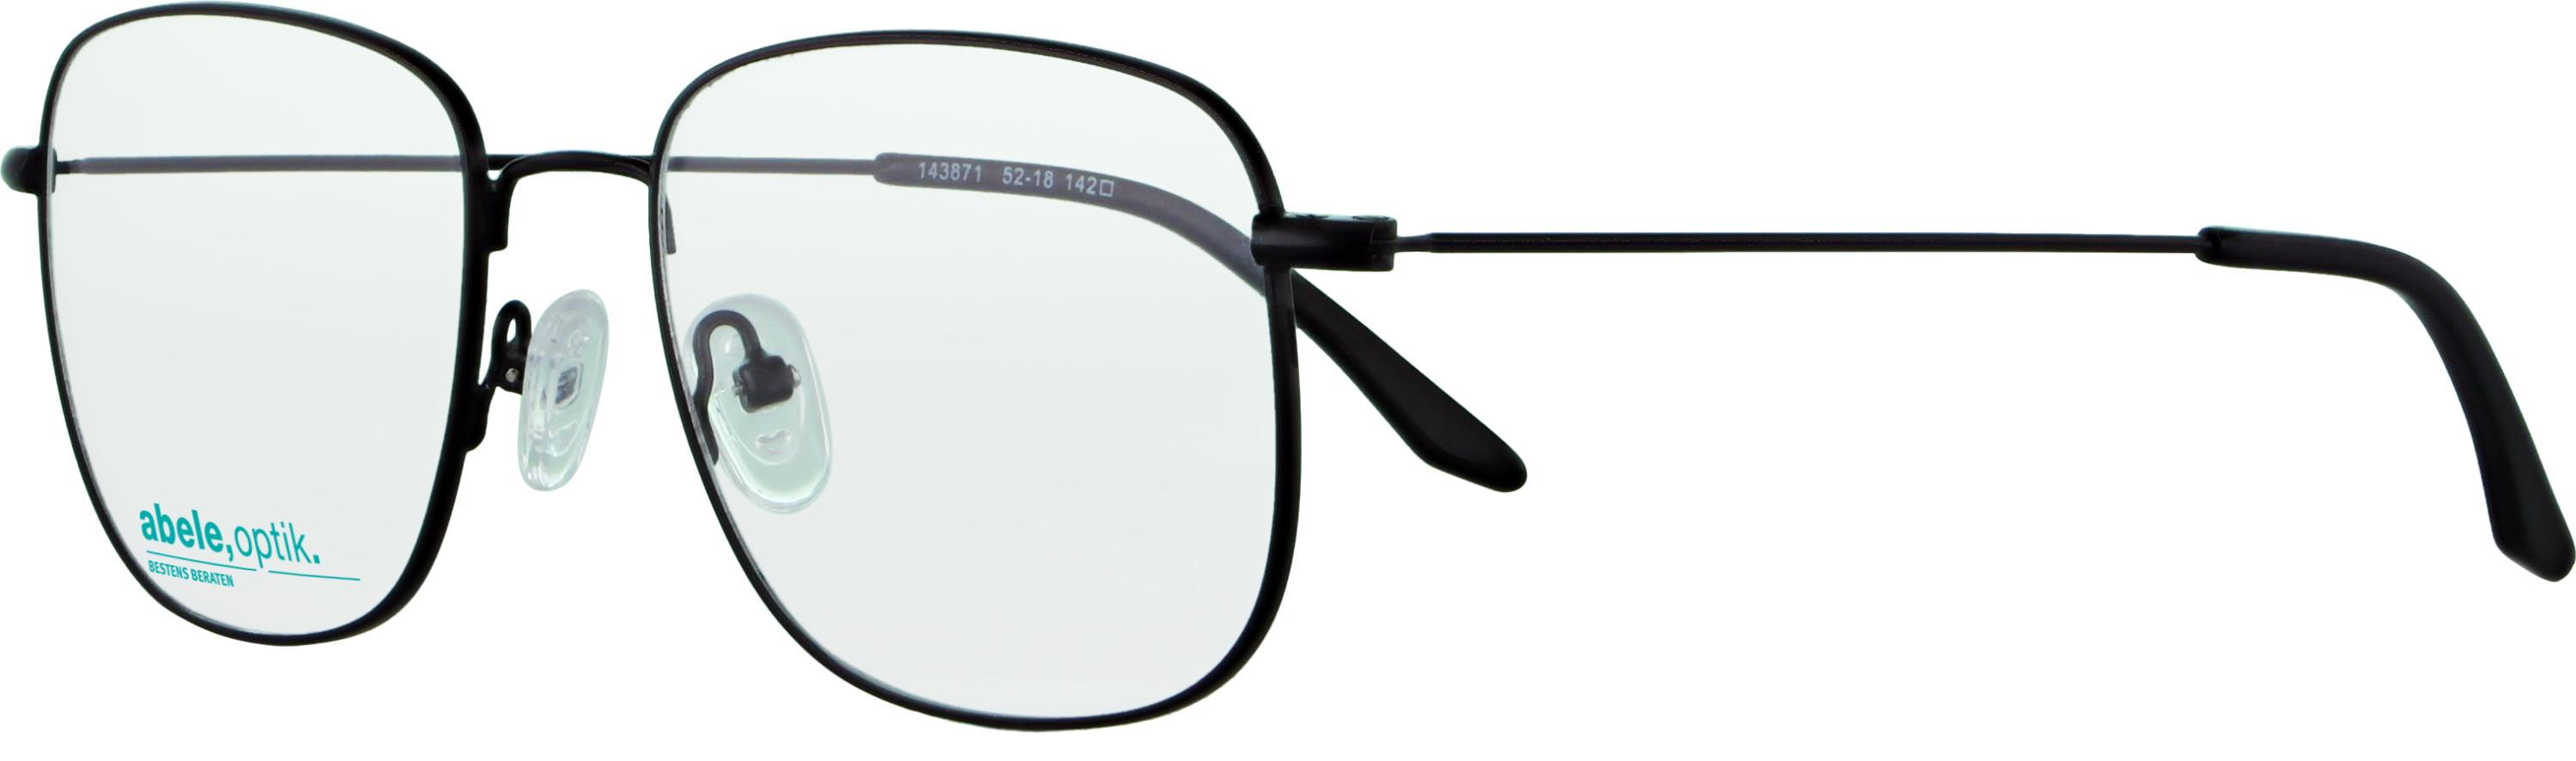 Das Bild zeigt die Korrektionsbrille 143871 von Abele Optik in schwarz.